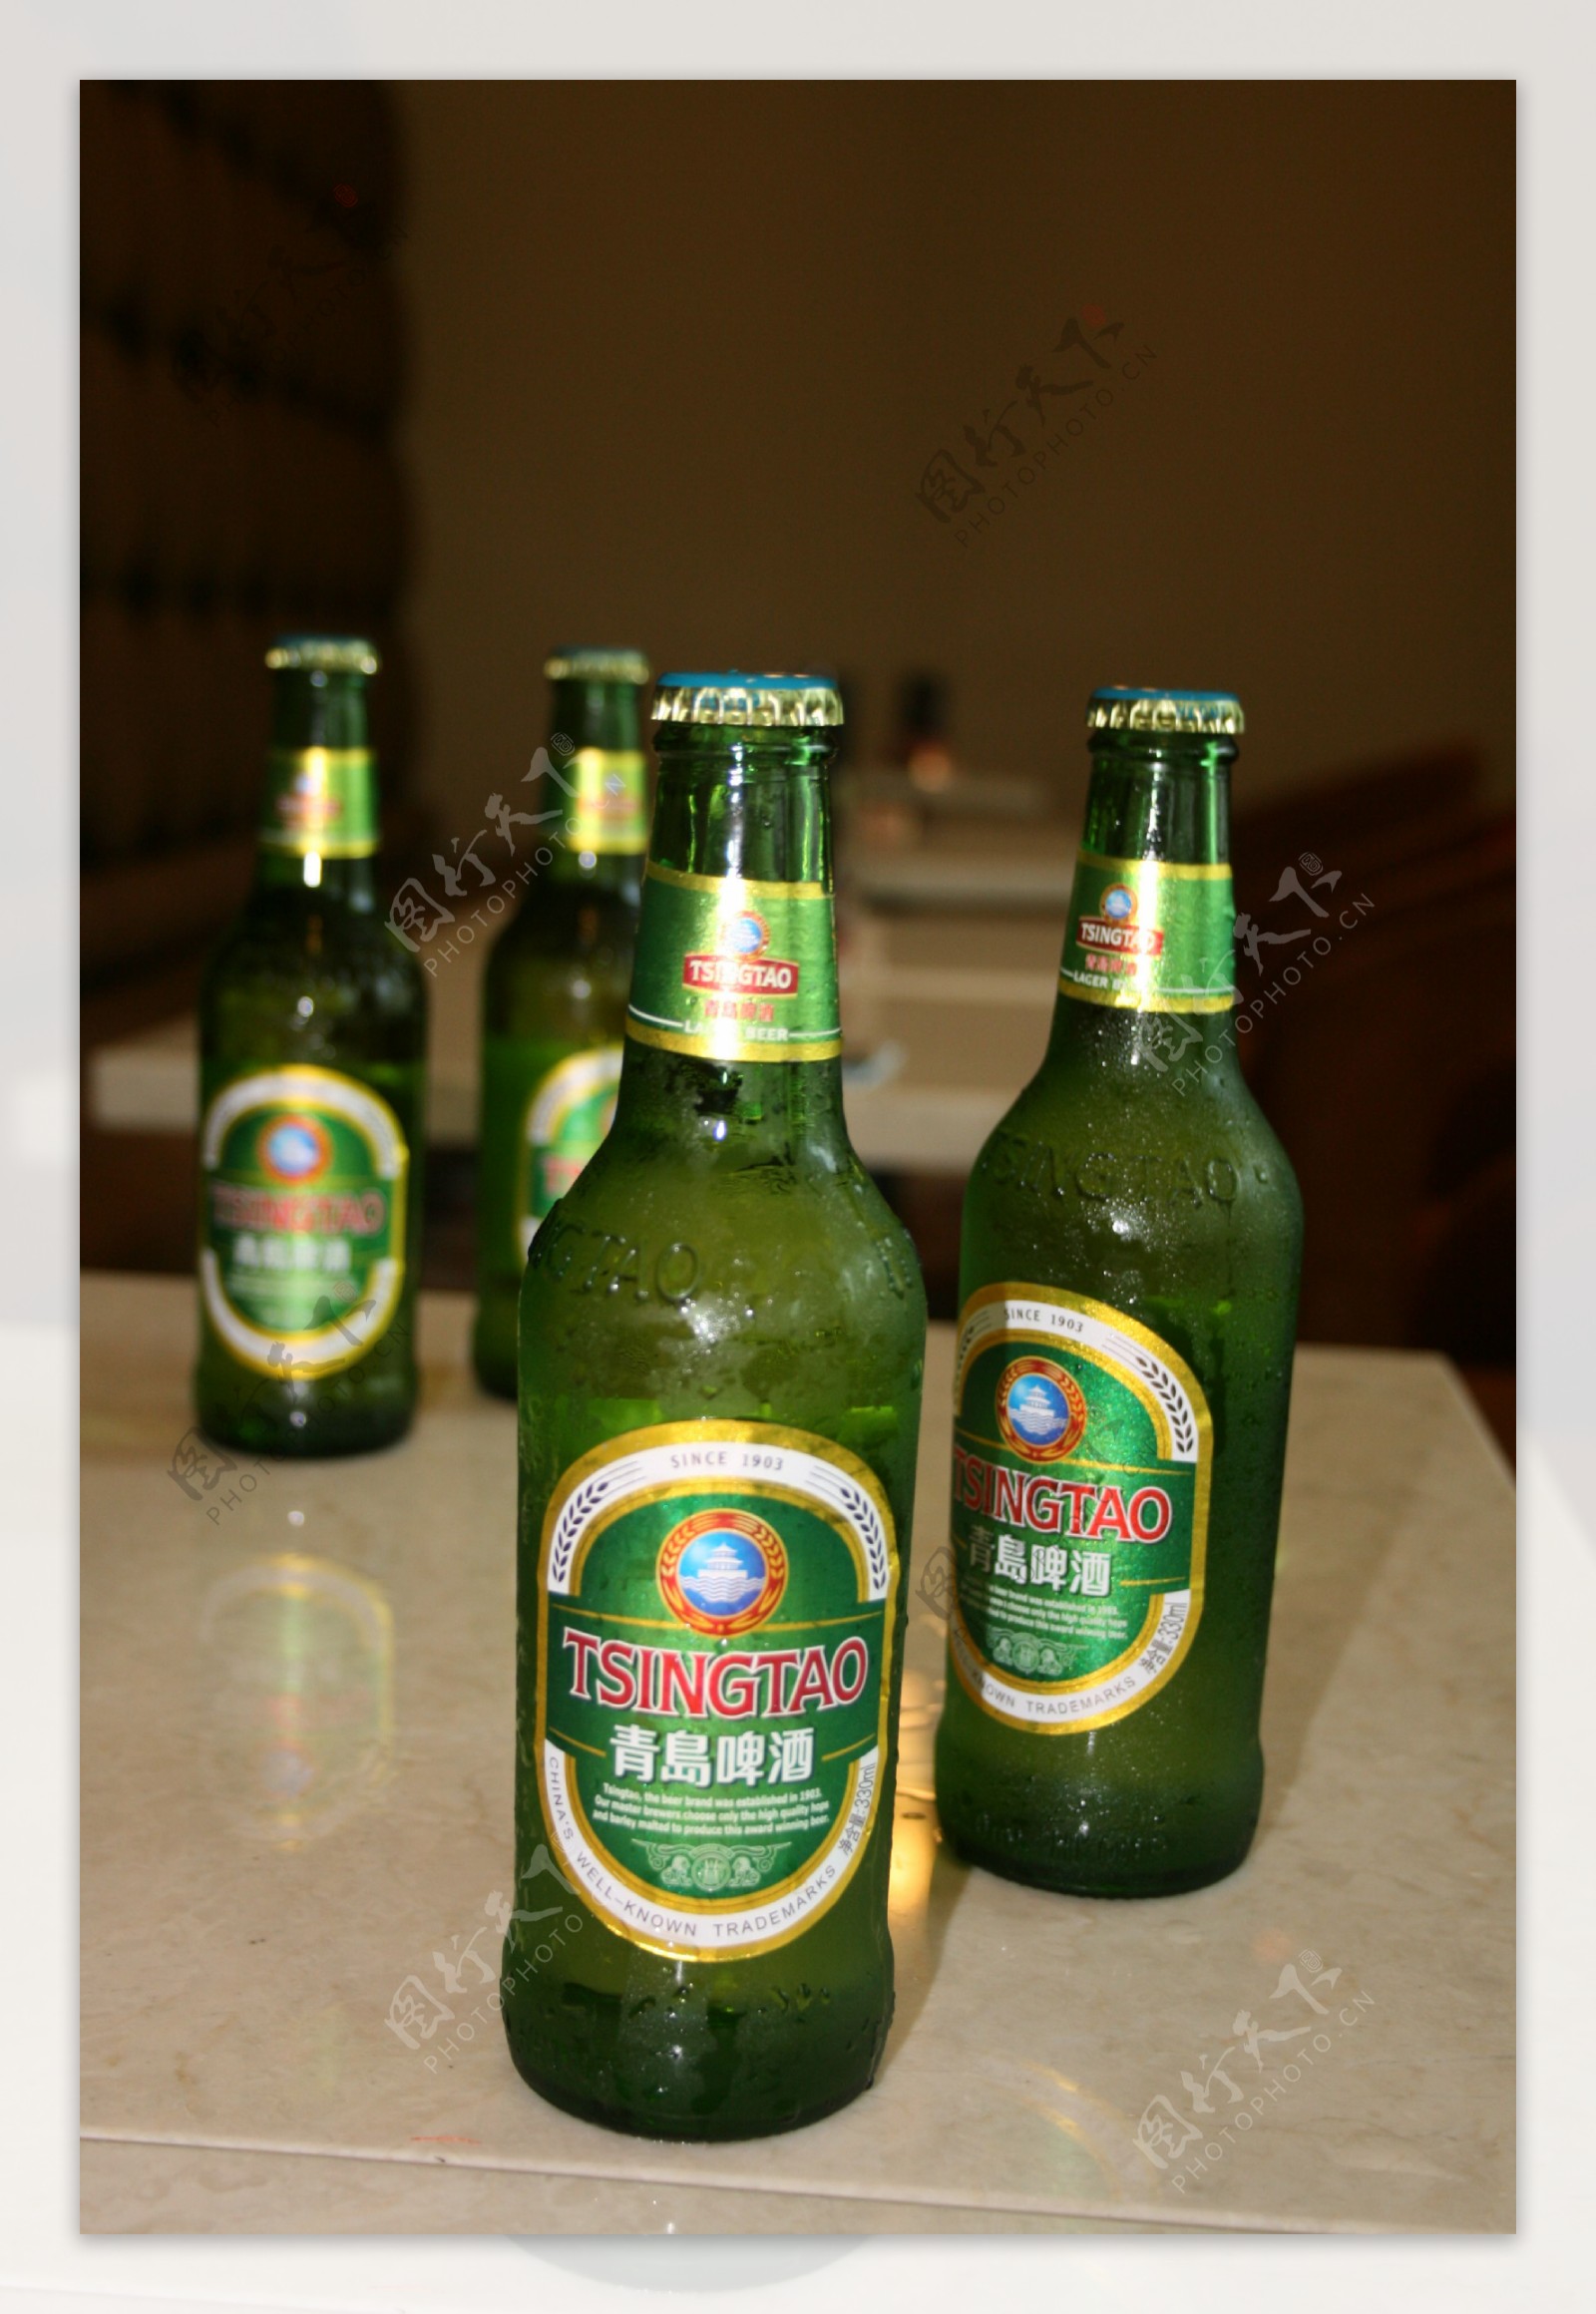 1297.62亿 青岛啤酒刷新中国啤酒品牌新高度 ——2017《中国500最具价值品牌》发布 青岛啤酒连续14年蝉联中国啤酒第一品牌_第一财经